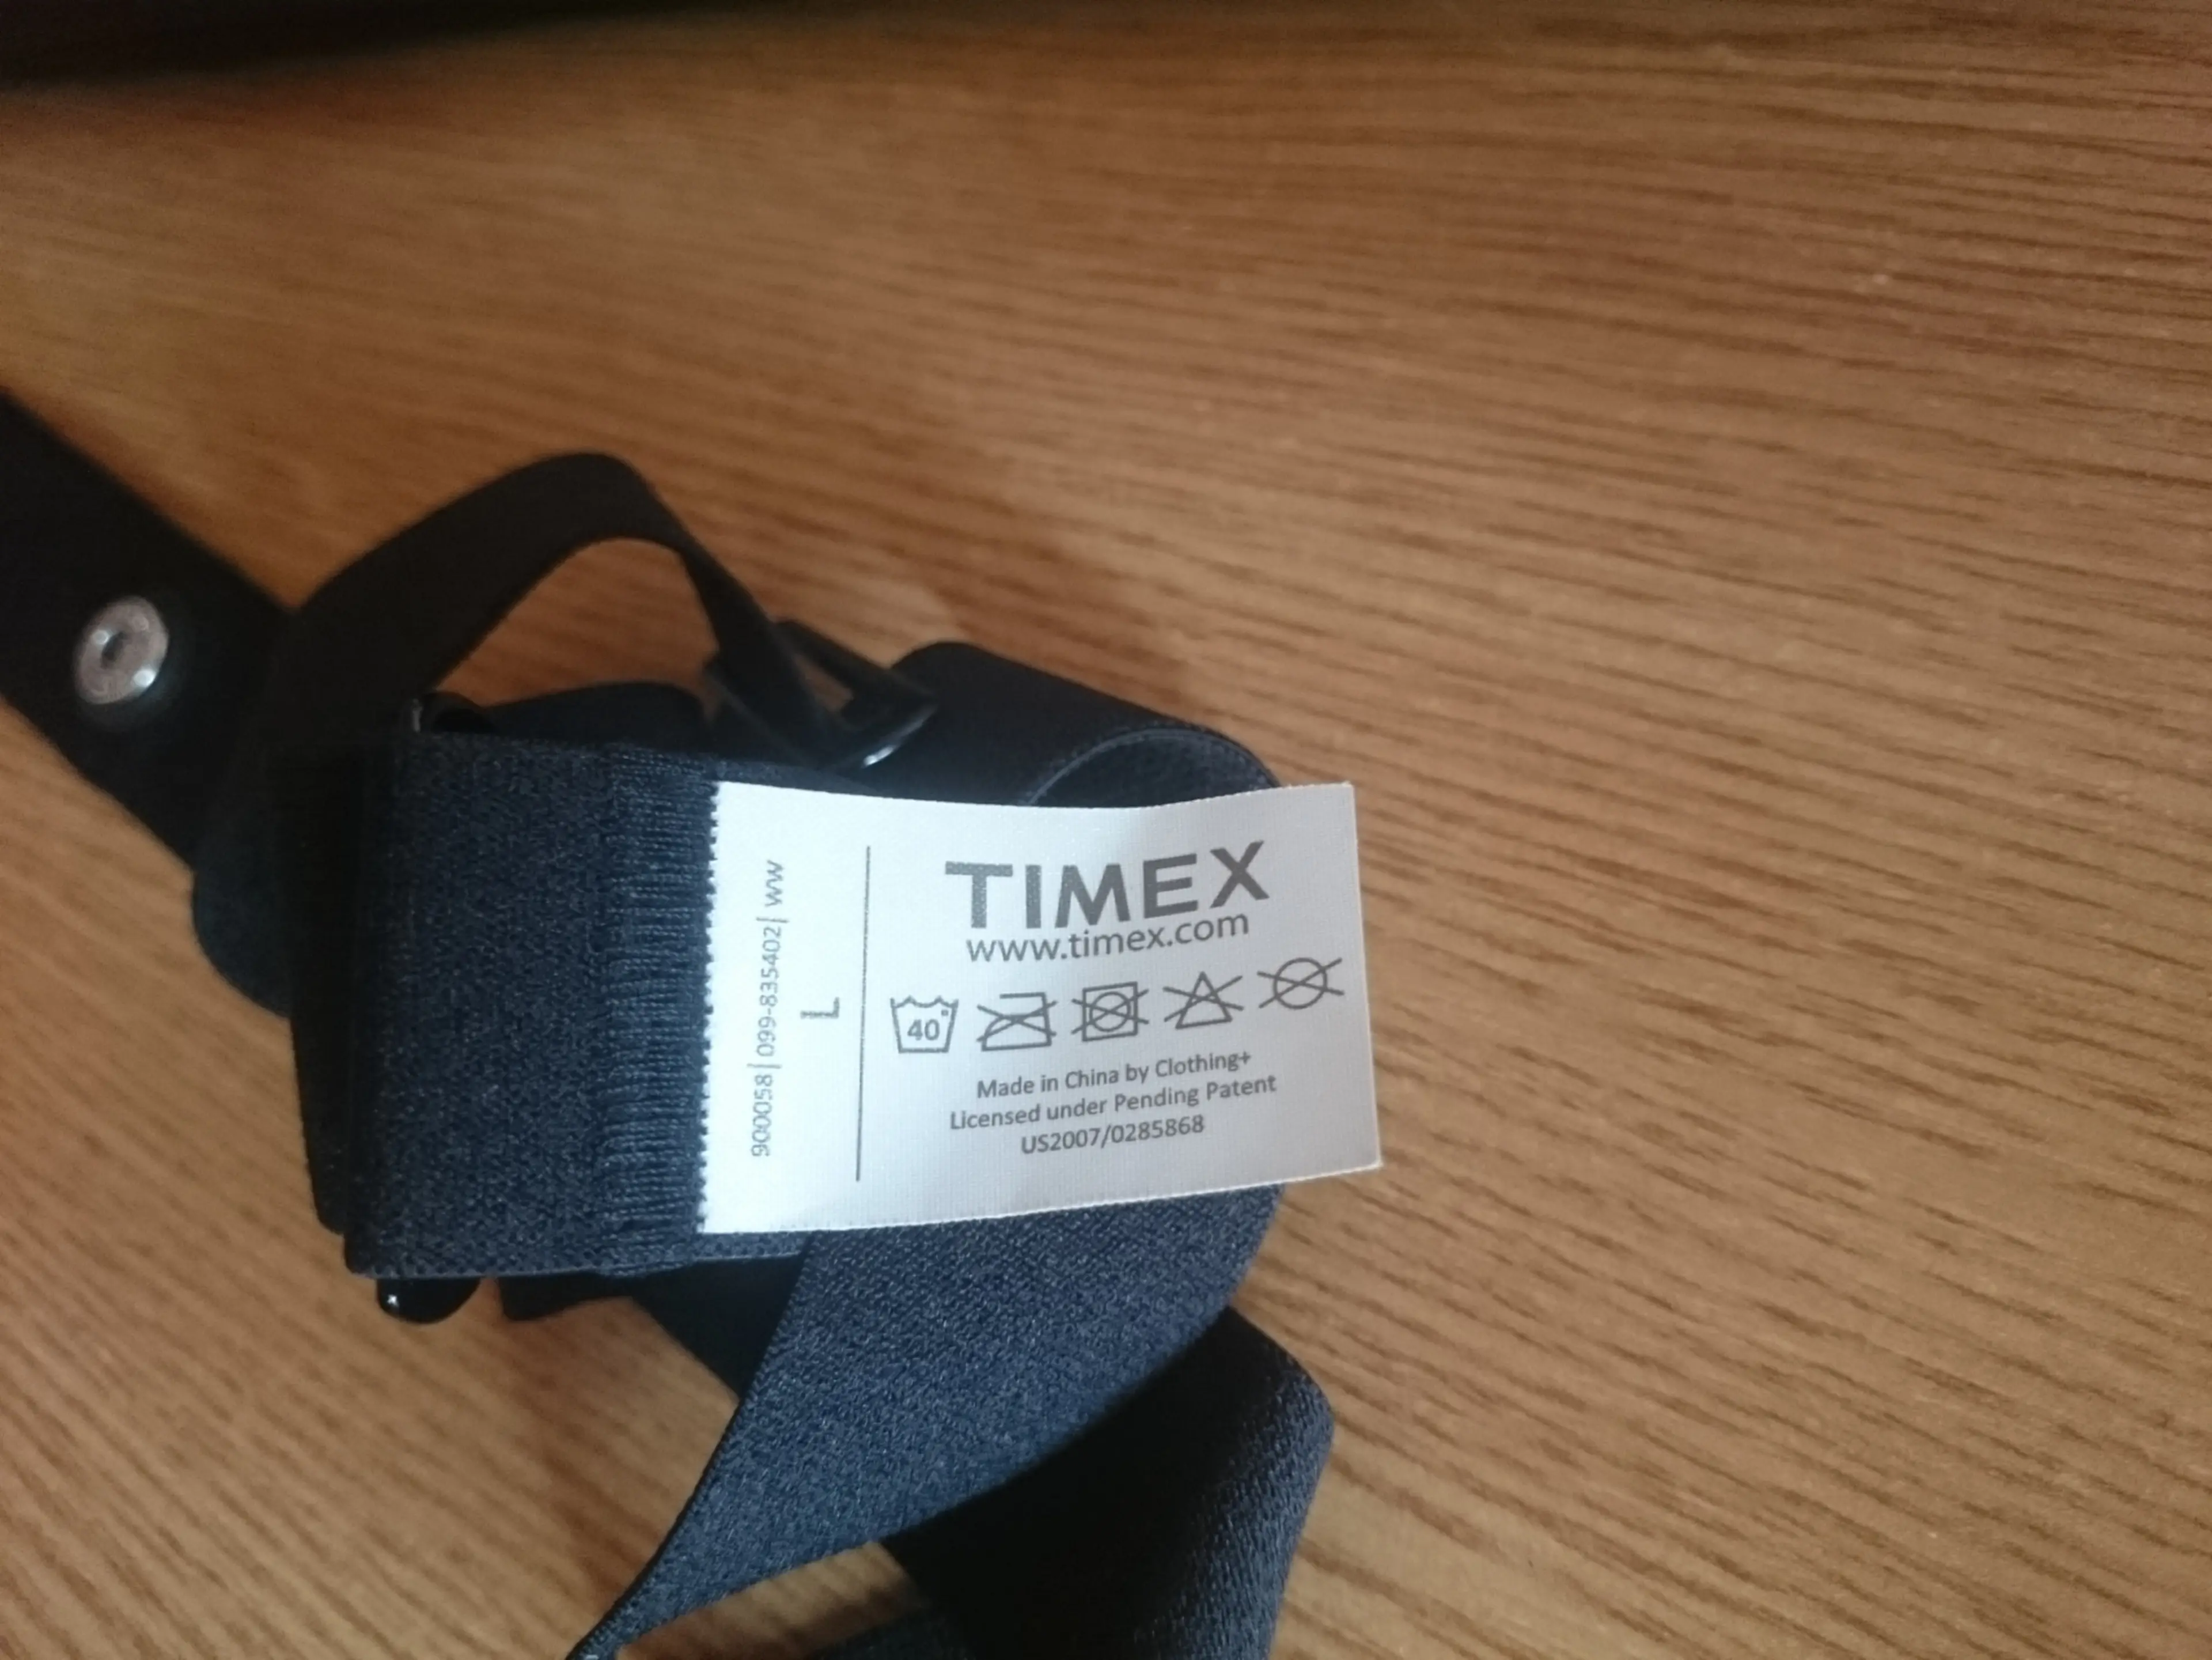 3. Timex  HRM Digital